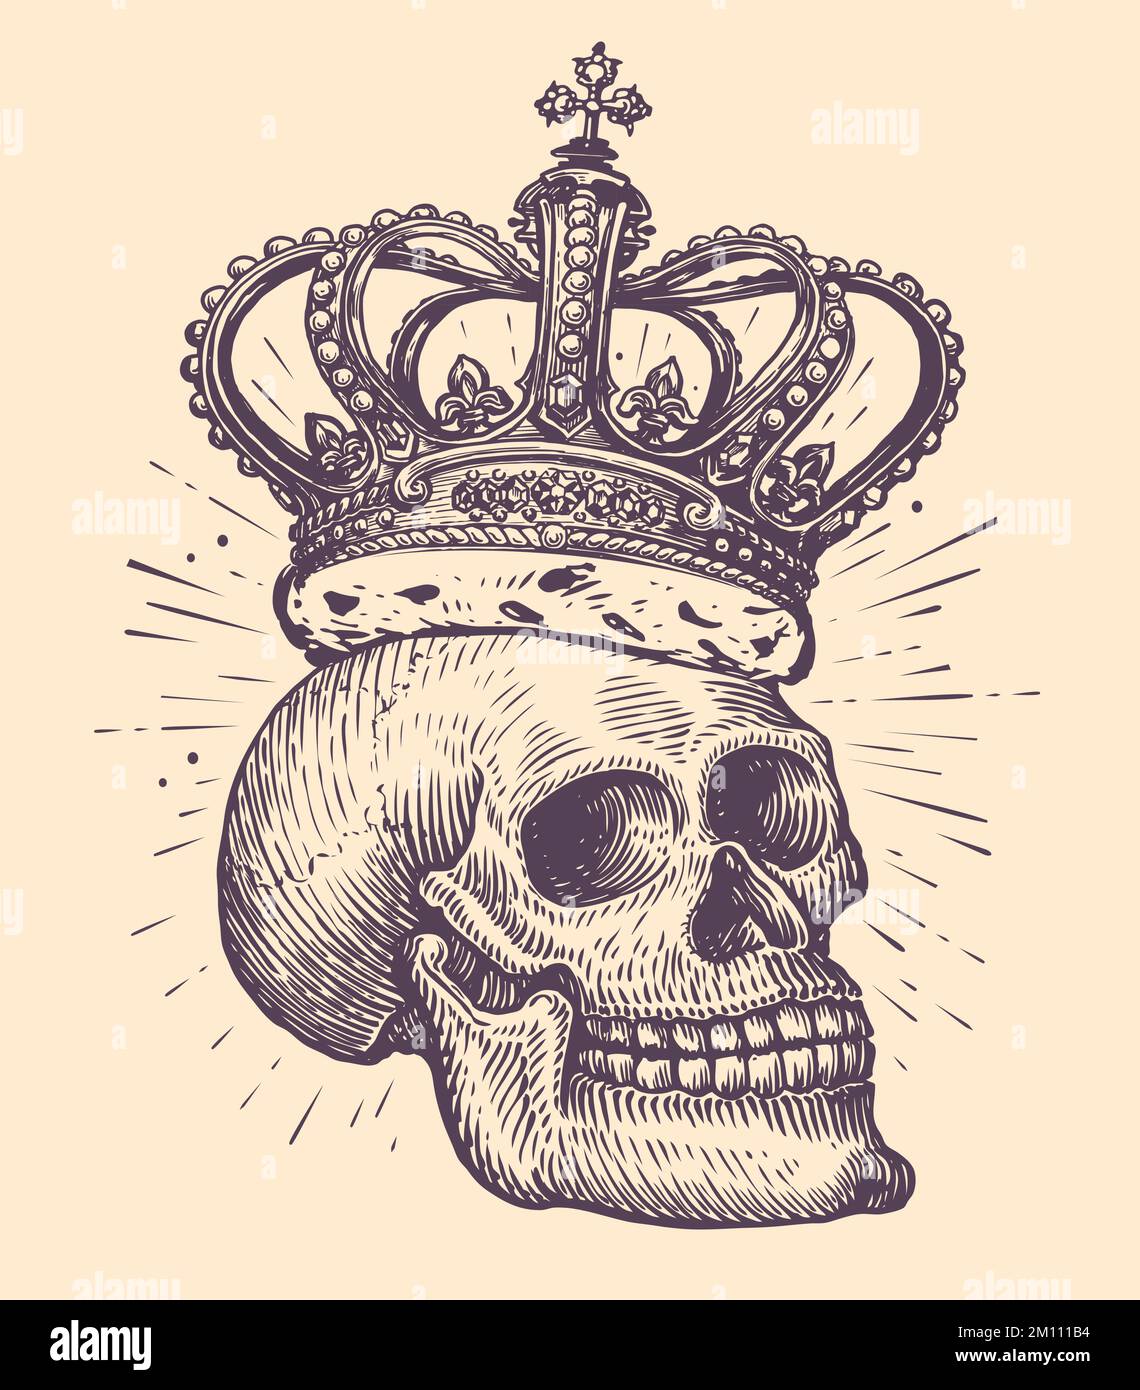 Cranio umano con corona del re. Disegno disegnato a mano in stile vintage. Illustrazione vettoriale del tatuaggio Illustrazione Vettoriale